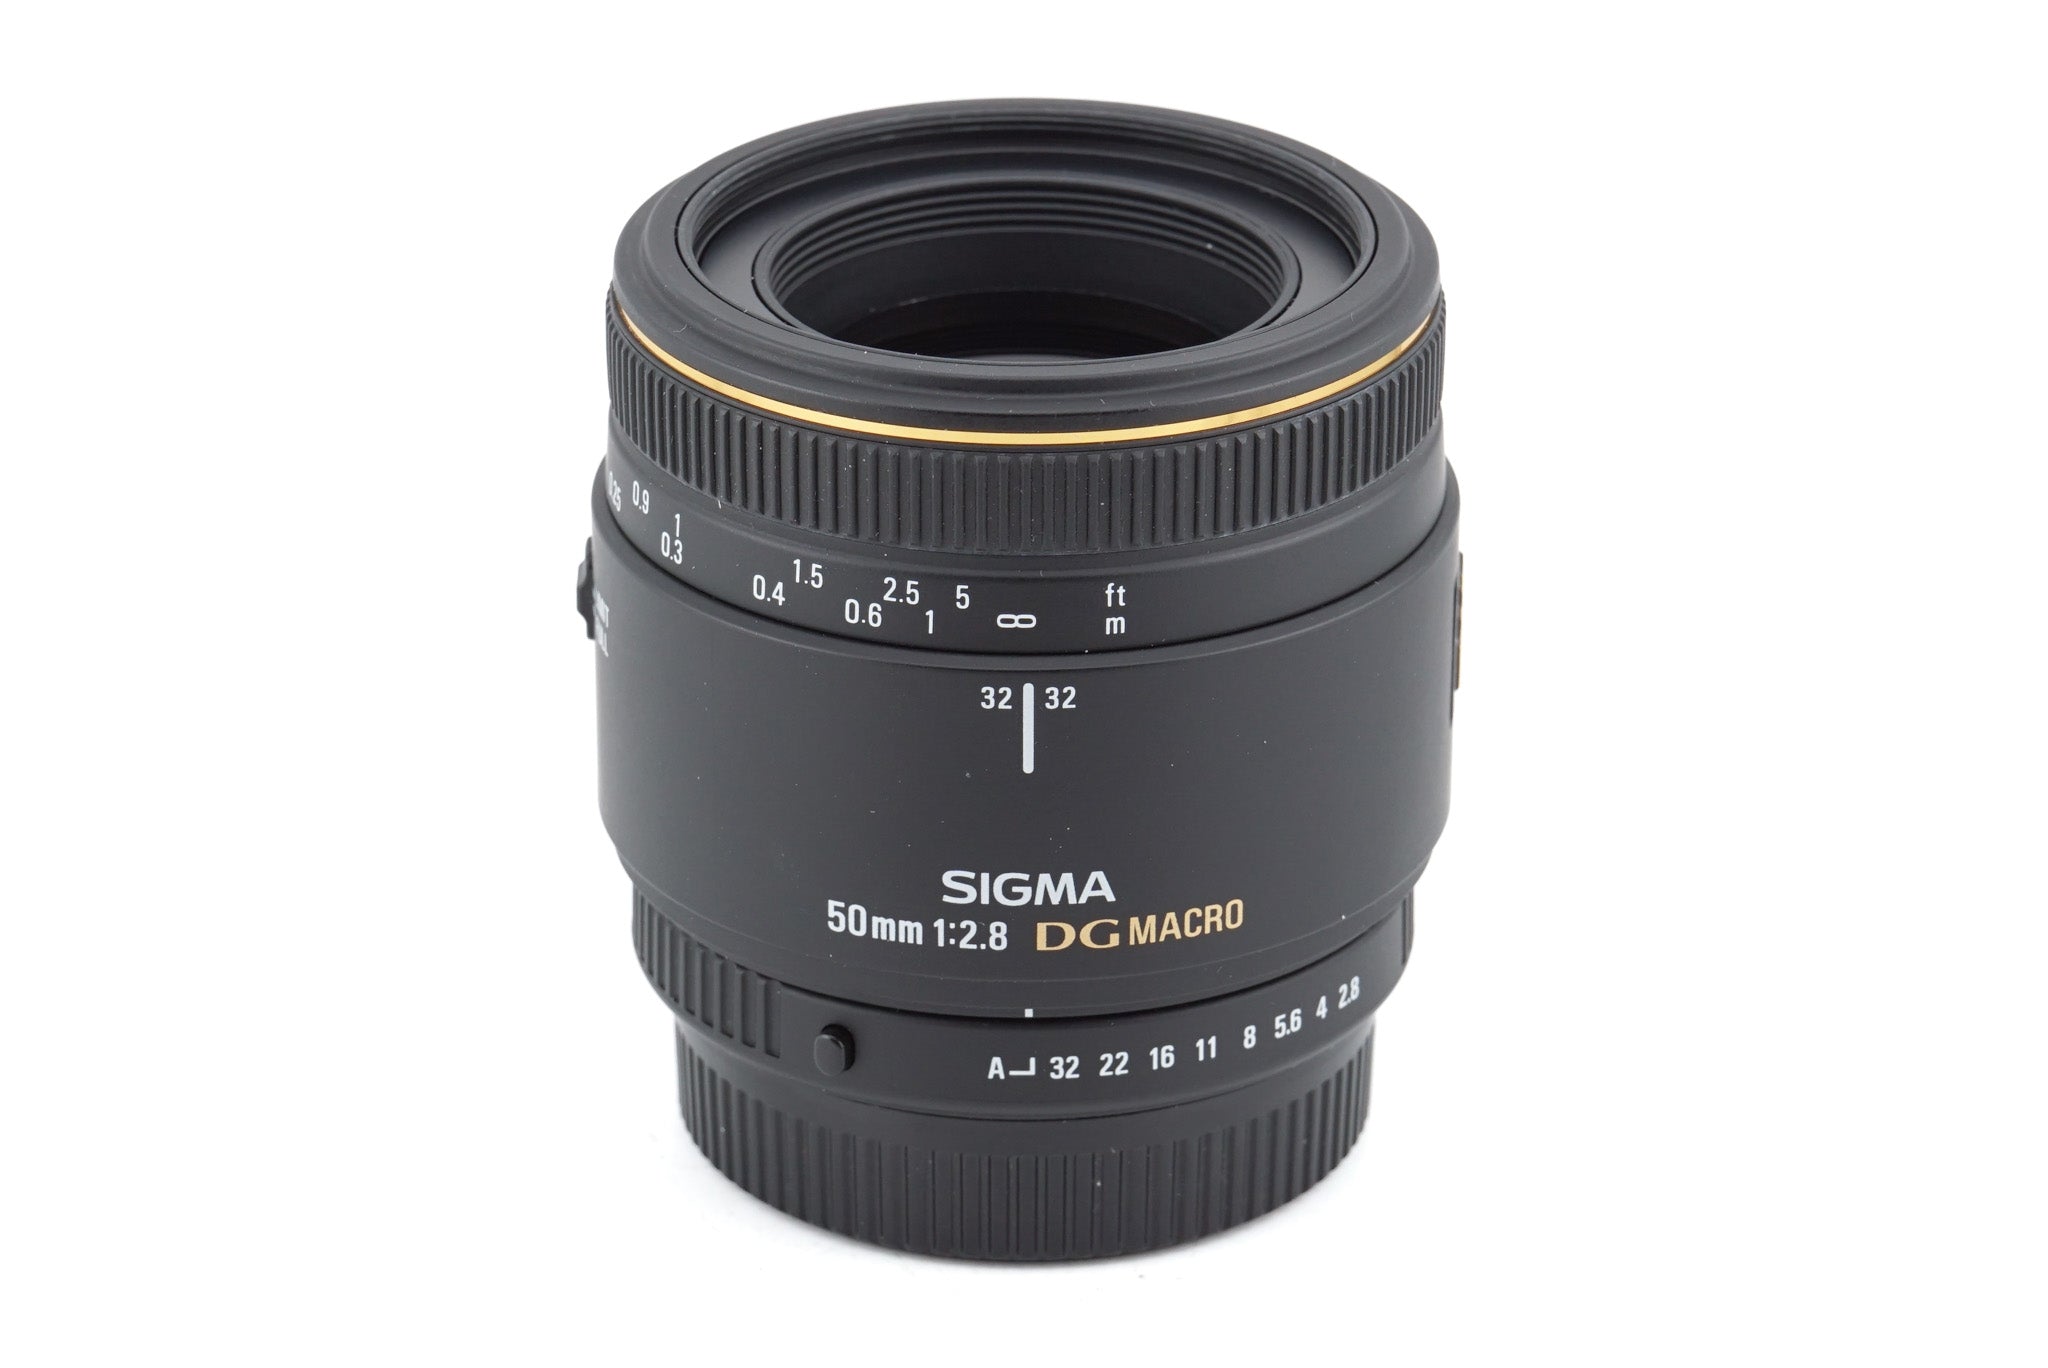 Sigma 50mm f2.8 EX DG Macro - Lens